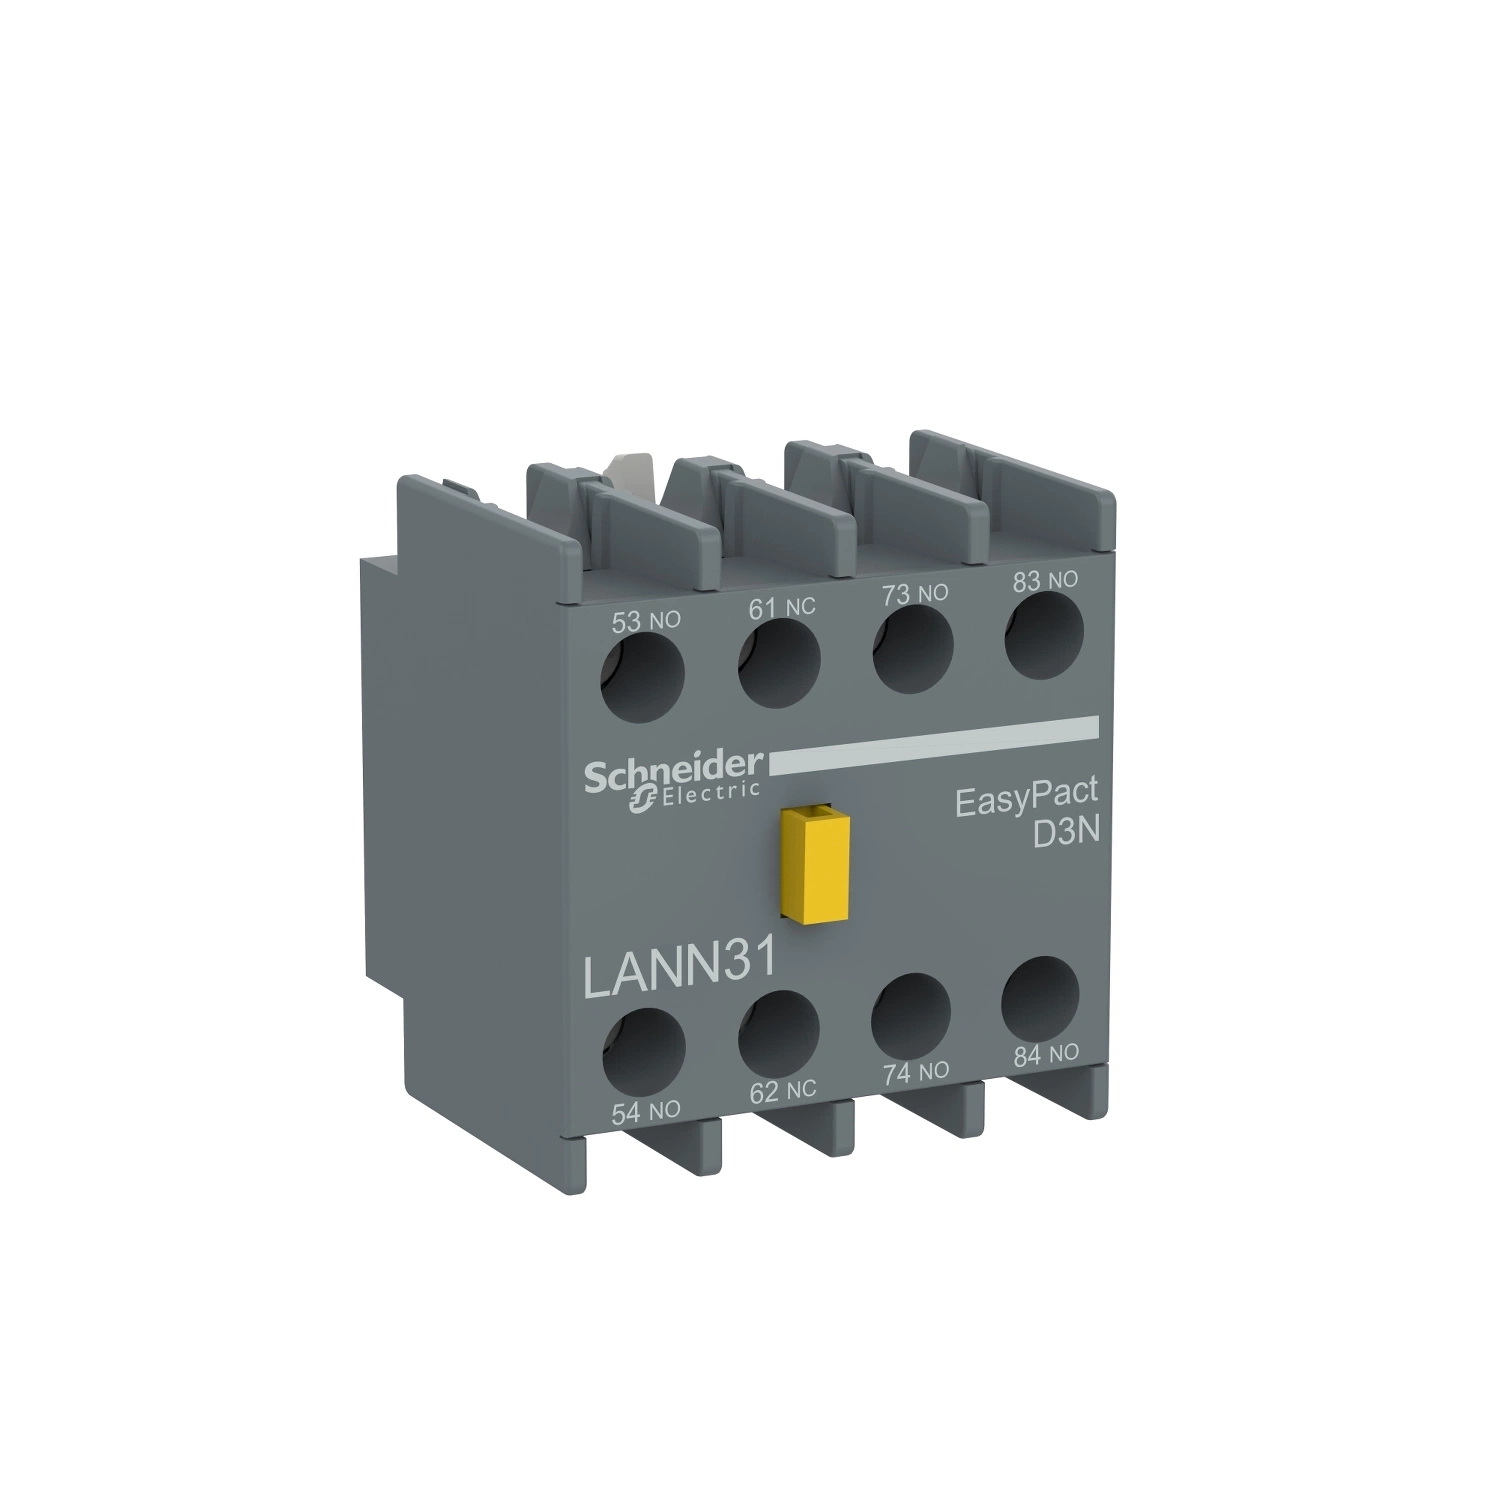 Lrn361n protection contre les surintensités du relais de surcharge thermique Schneid Lrn10n 4-6A remplace LRE et s'adapte à LC1n triphasé 380 V.